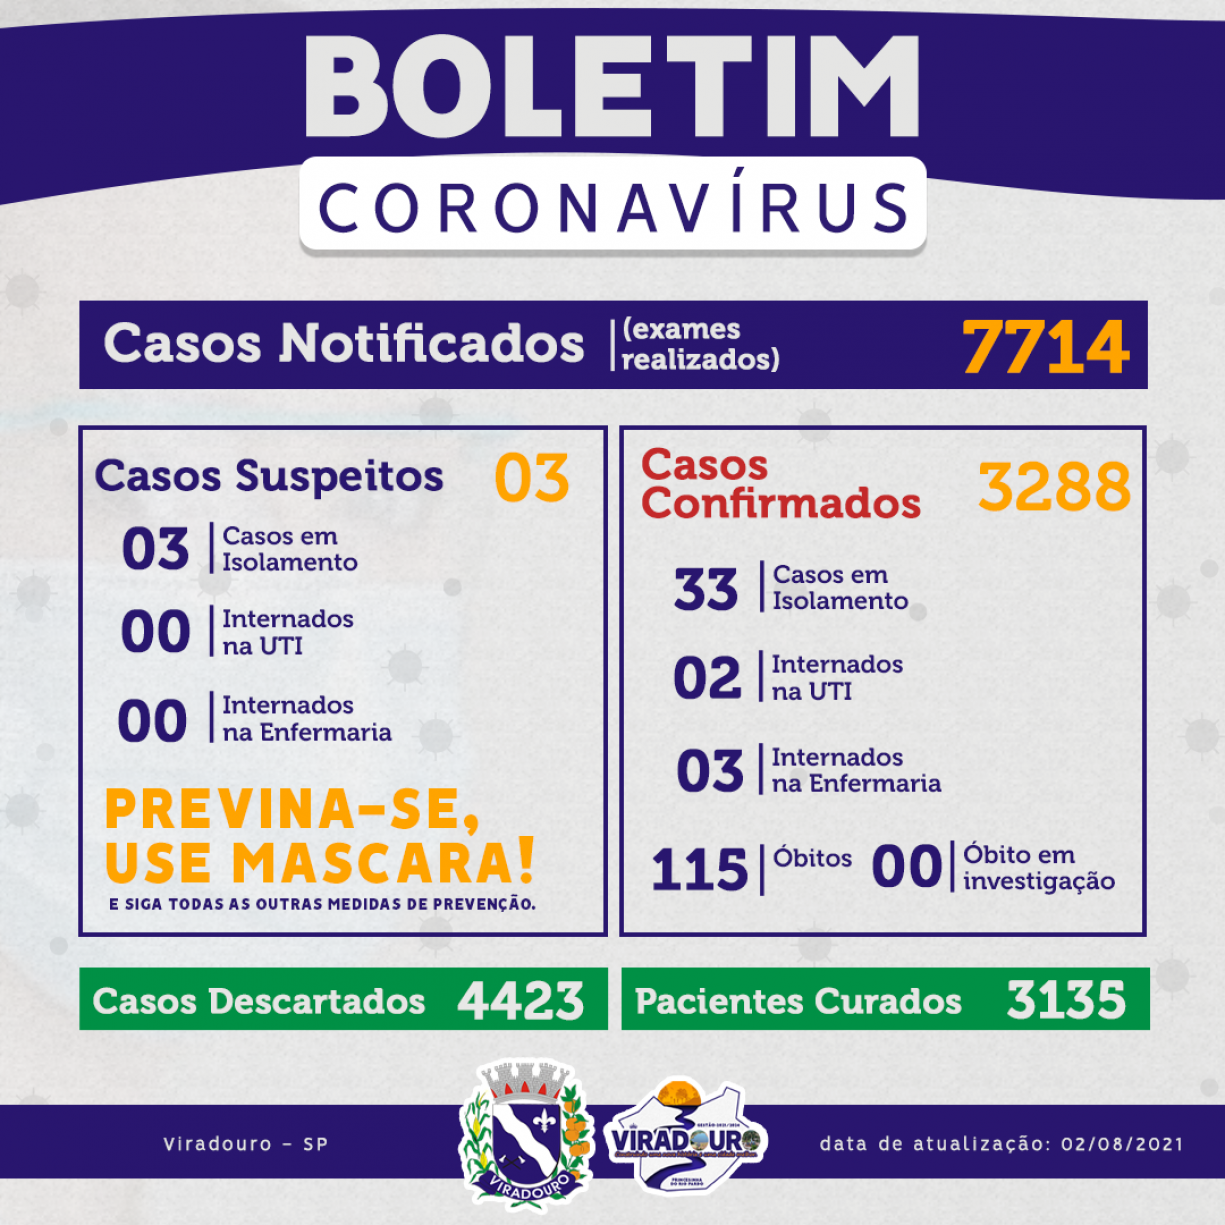 CORONAVÍRUS: BOLETIM EPIDEMIOLÓGICO (ATUALIZAÇÃO 02/08/2021)